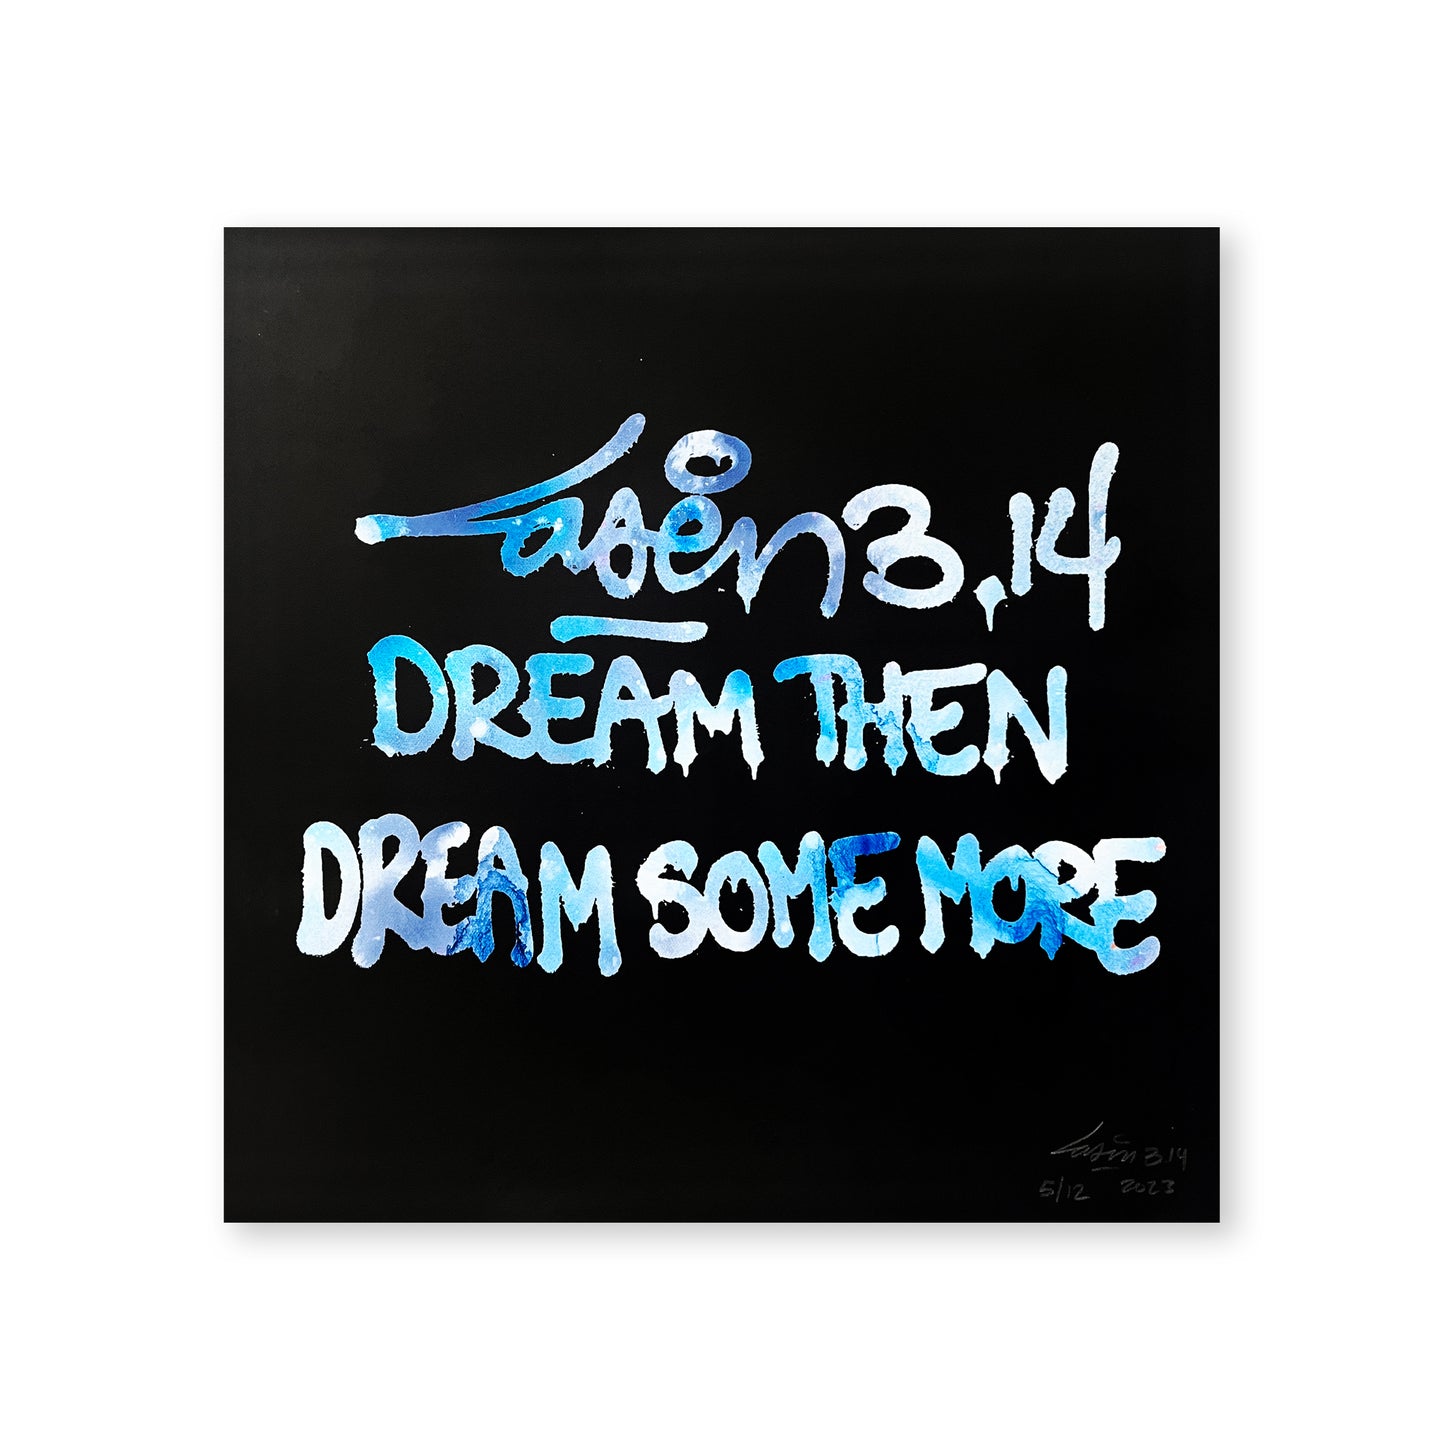 Dream Then Dream Some More 5/12